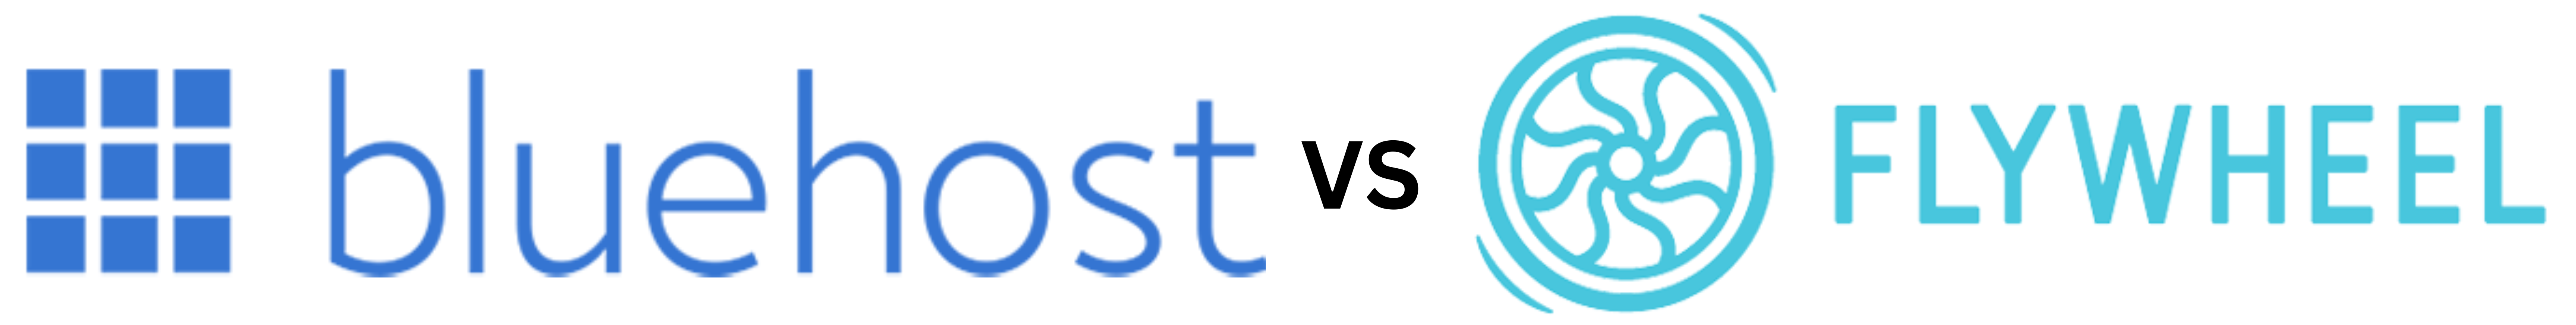 Bluehost vs. Flywheel